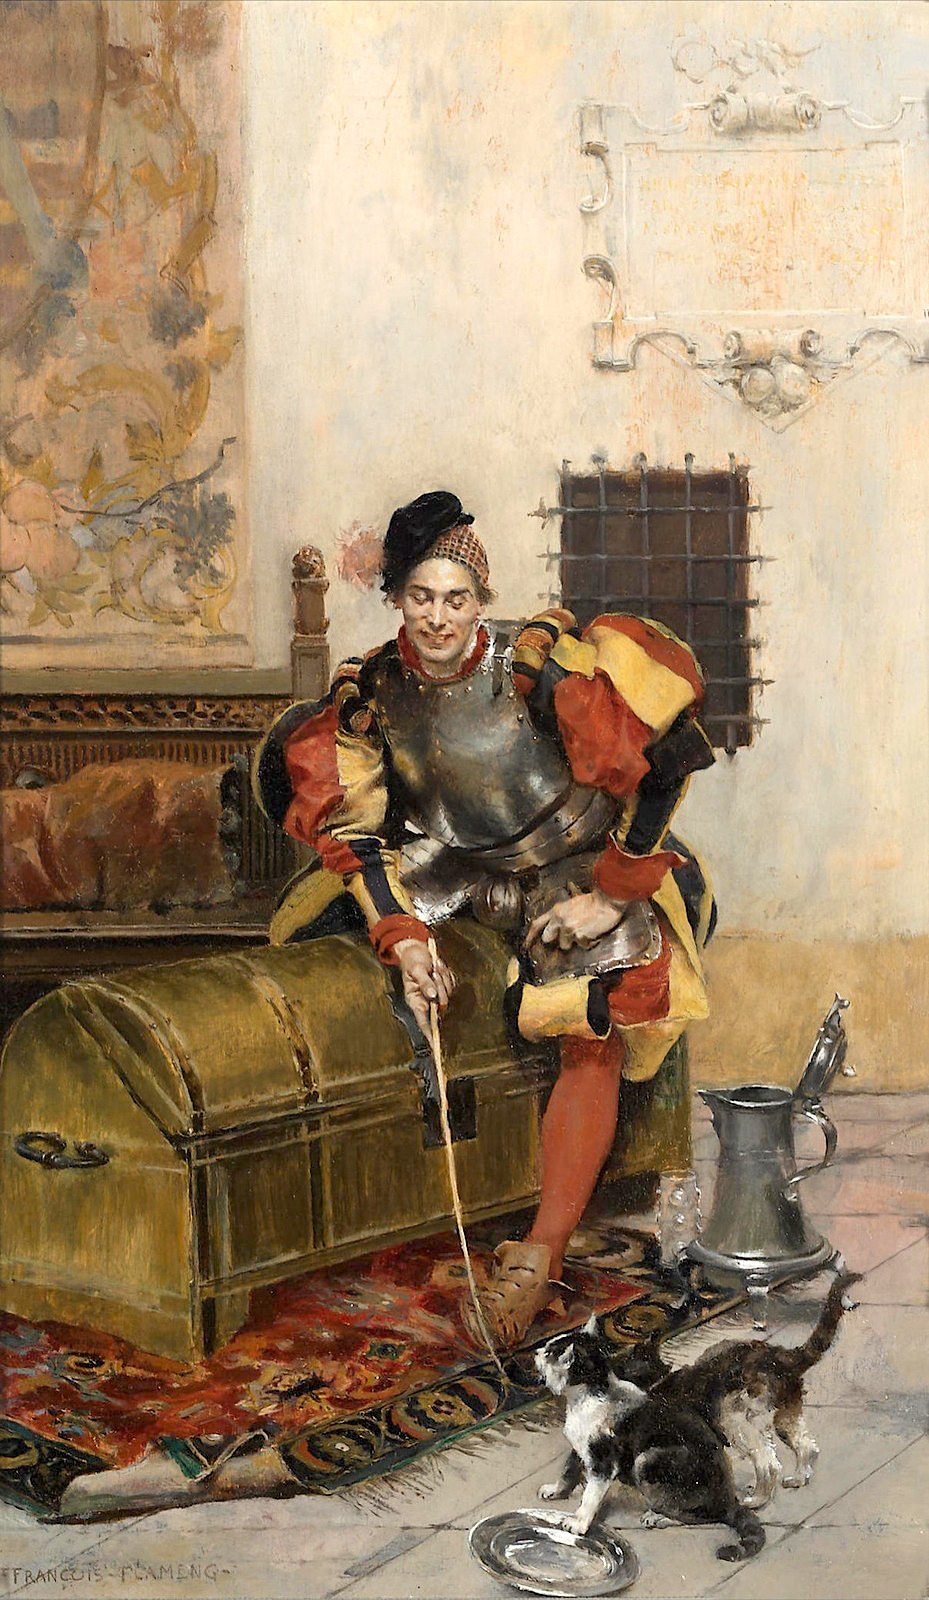 podsteklom:âÐÐ³ÑÐ°ÑÑÐ¸Ð¸Ì ÐºÐ°Ð²Ð°Ð»ÐµÑ (The playful cavalier). Ð¤ÑÐ°Ð½ÑÑÐ° Ð¤Ð»Ð°Ð¼ÐµÐ½Ð³ (FrancÌ§ois Flameng), (1856-1923)â